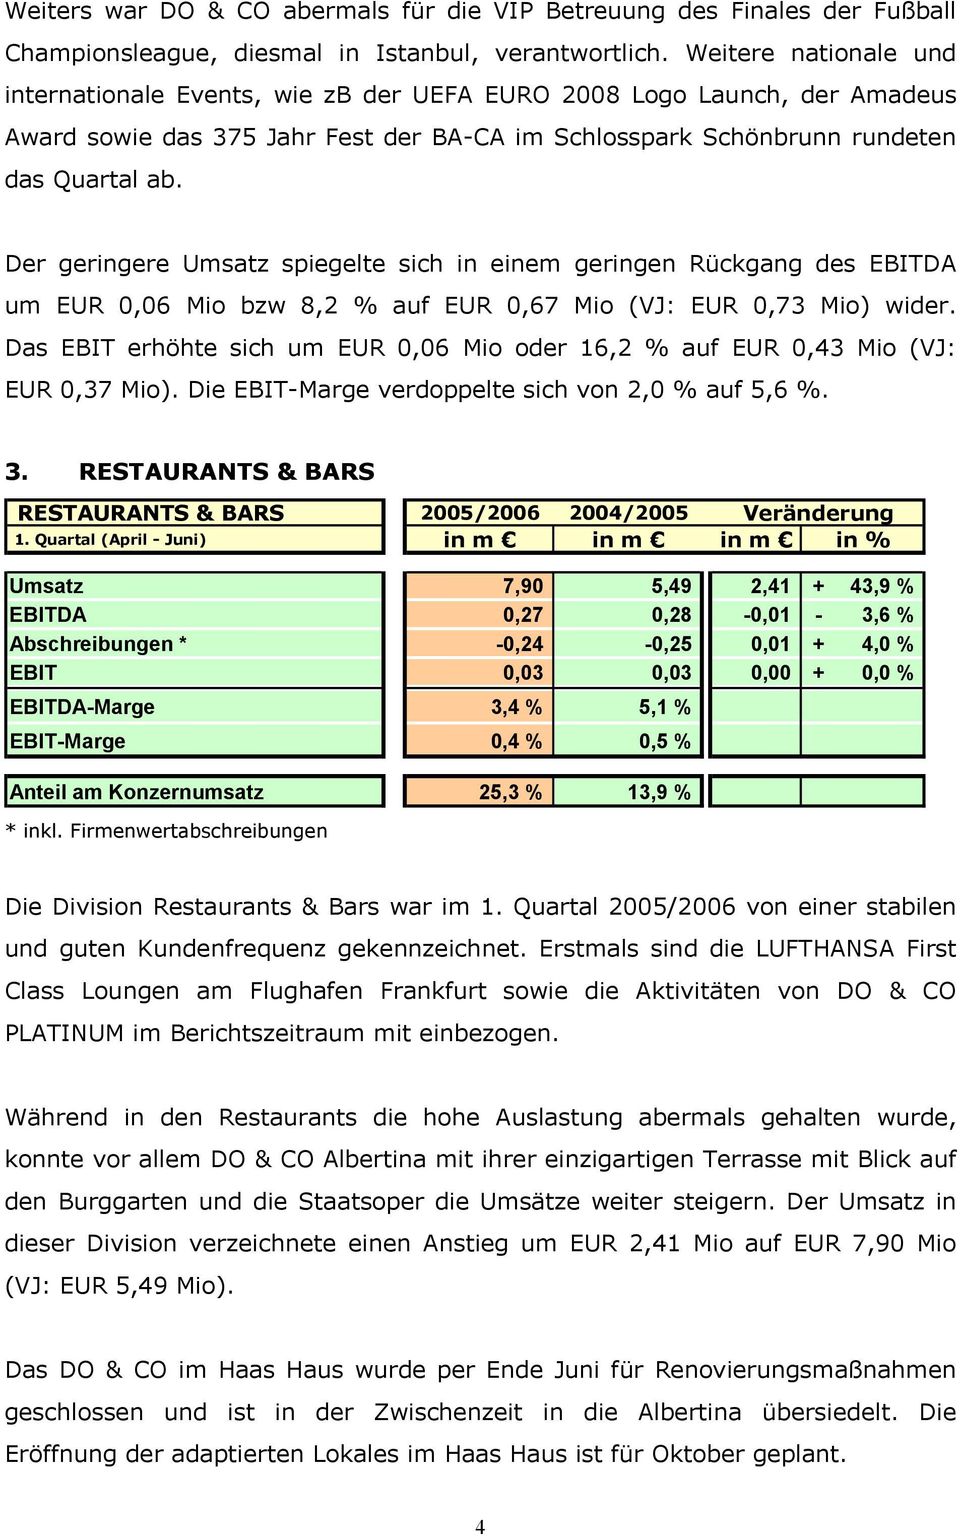 Der geringere Umsatz spiegelte sich in einem geringen Rückgang des EBITDA um EUR 0,06 Mio bzw 8,2 % auf EUR 0,67 Mio (VJ: EUR 0,73 Mio) wider.